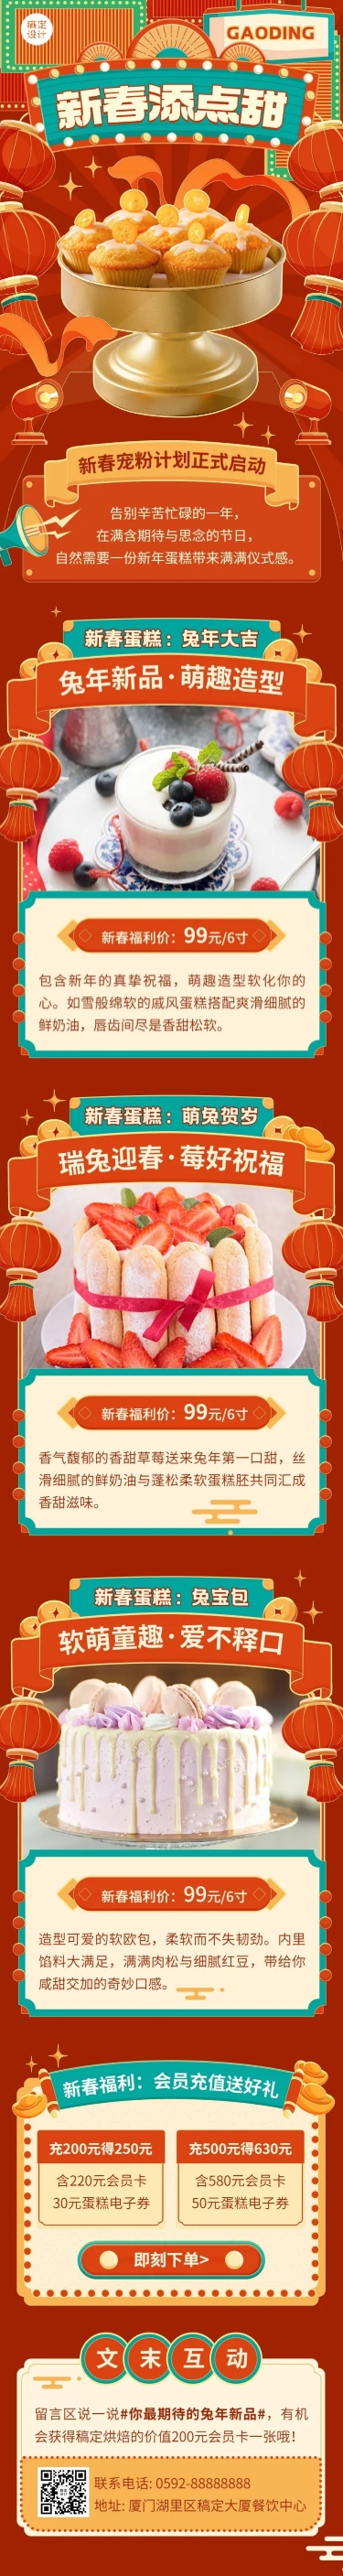 餐饮春节新春烘焙甜品促销活动文章长图预览效果